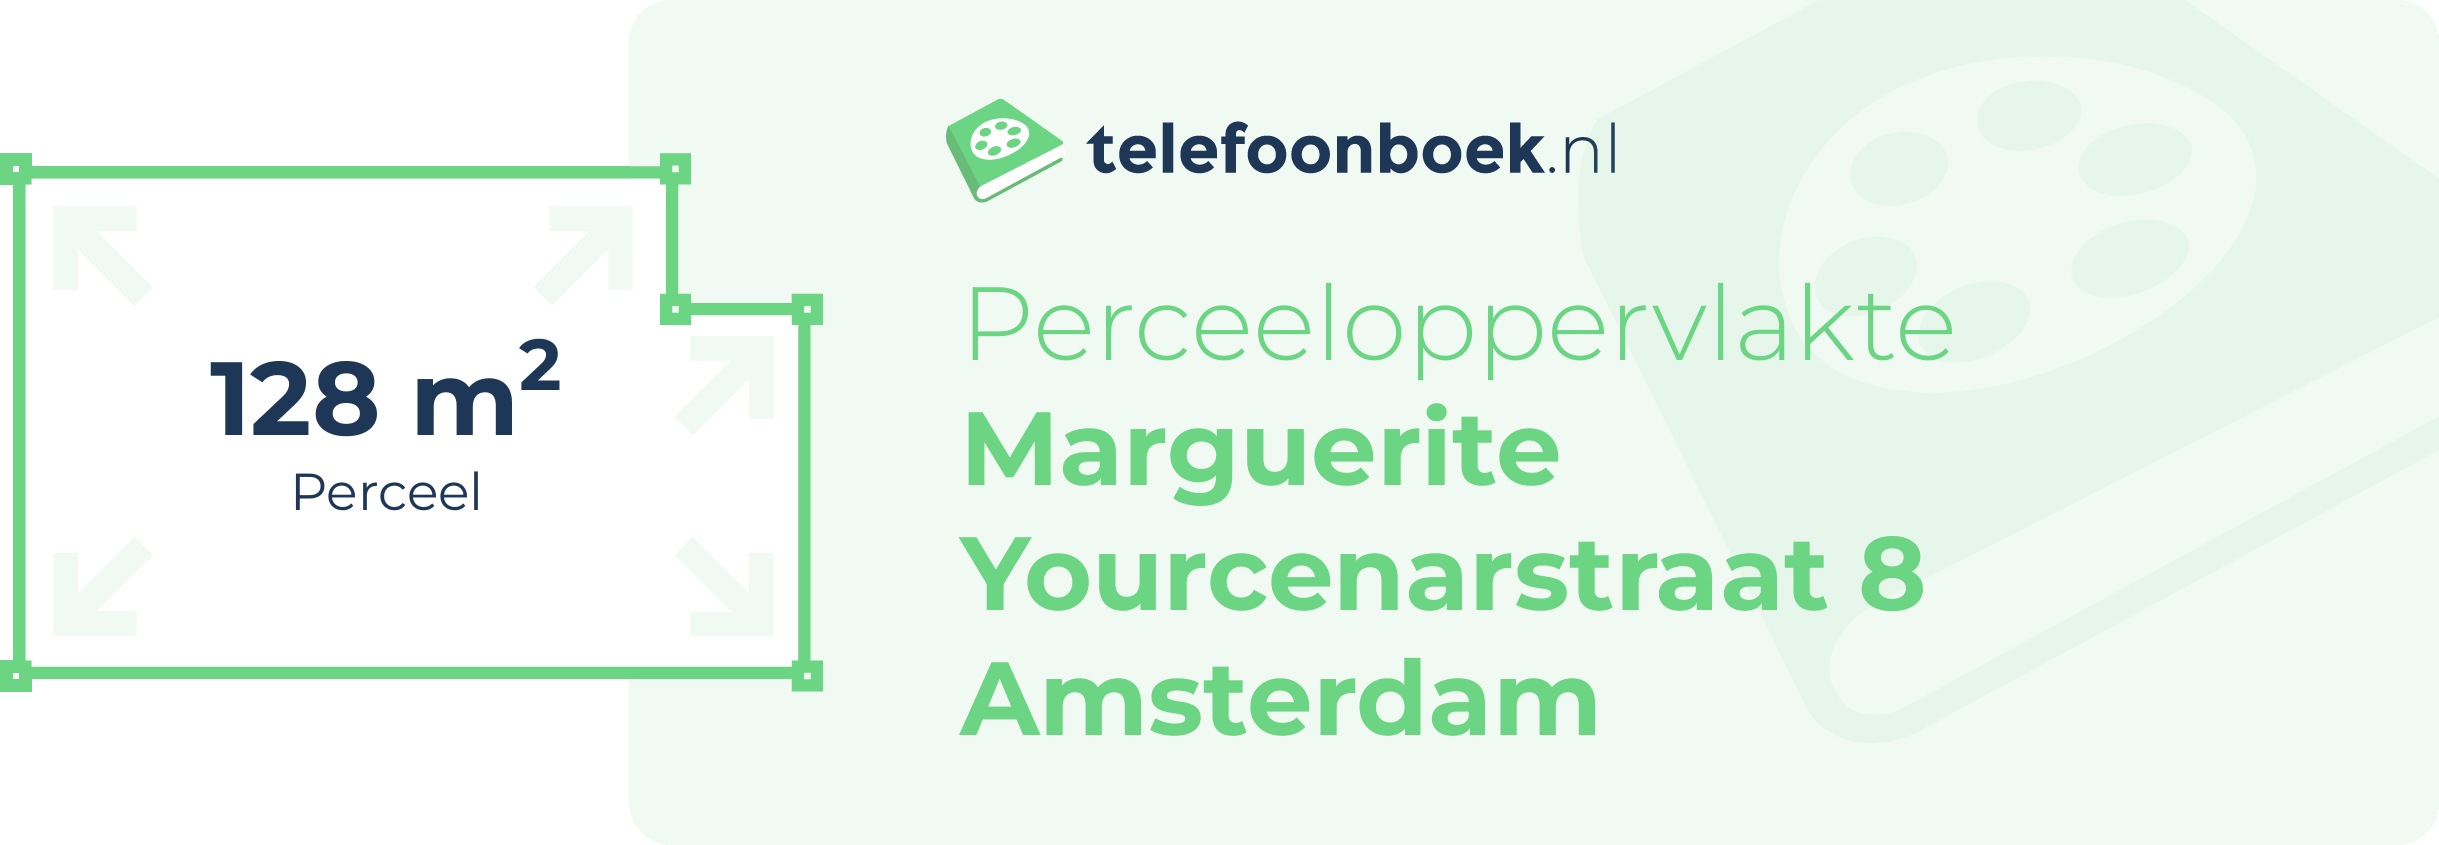 Perceeloppervlakte Marguerite Yourcenarstraat 8 Amsterdam